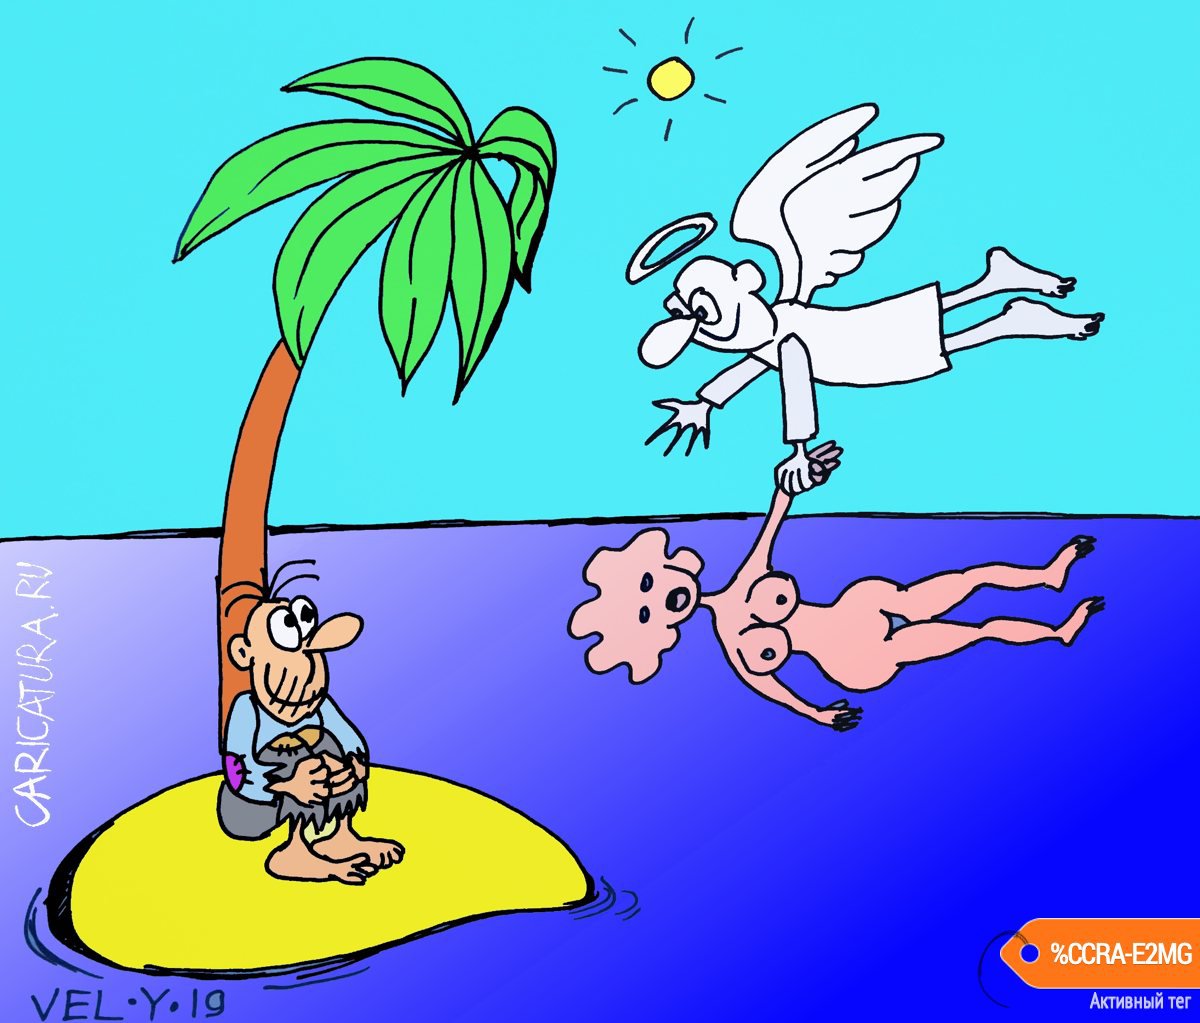 Карикатура "Ангел-хранитель", Юрий Величко